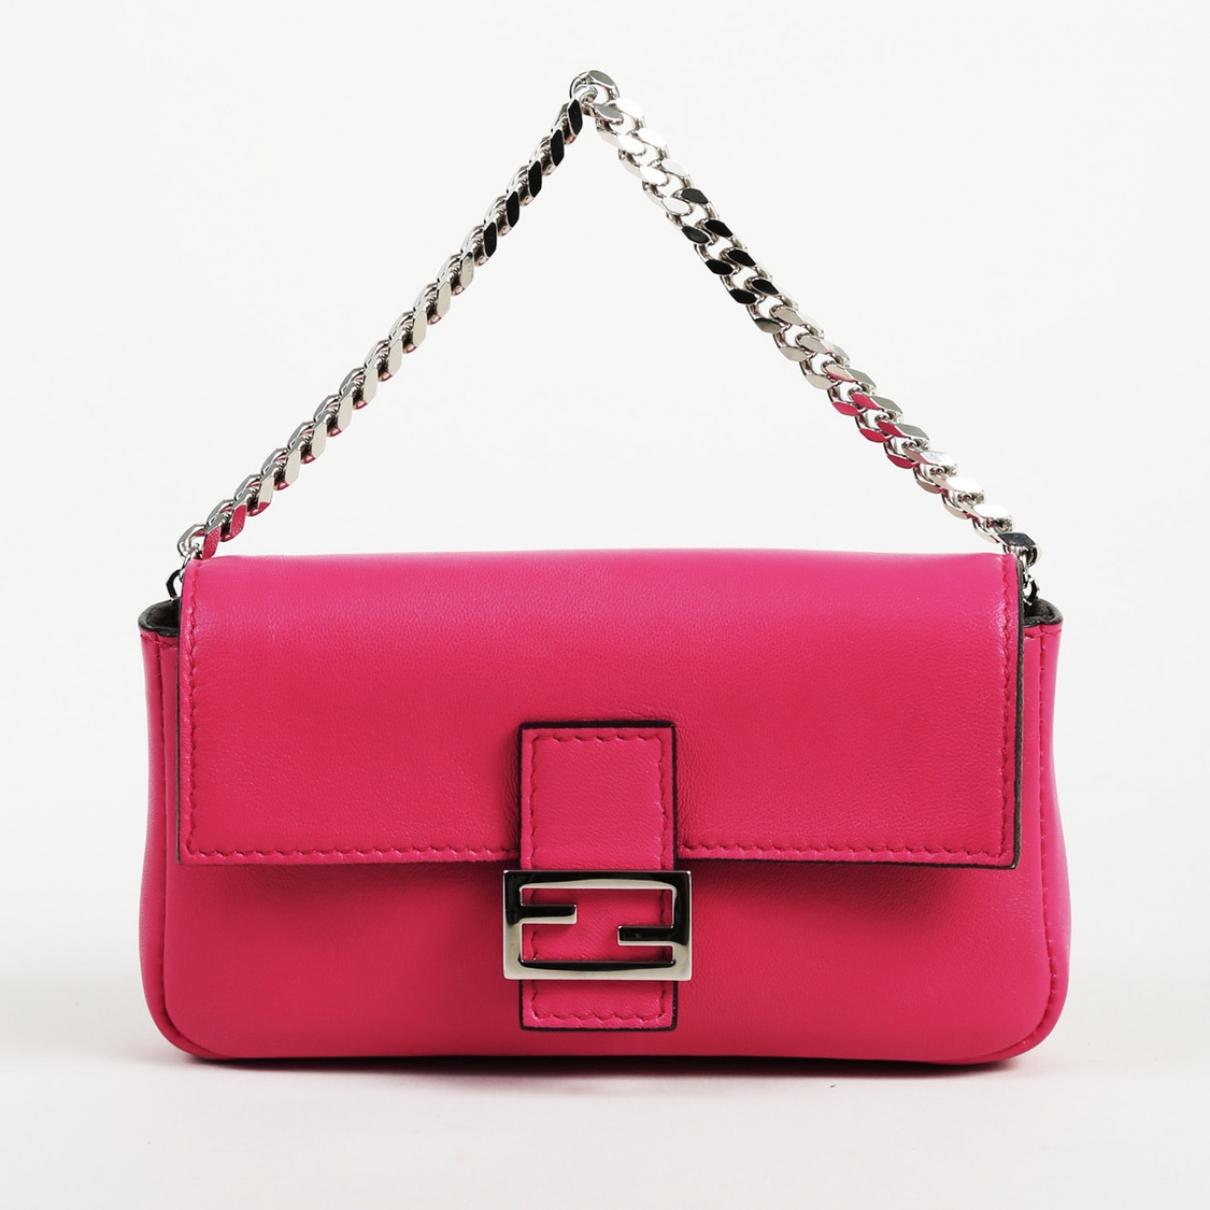 Lyst - Fendi Baguette Pink Leather Handbag in Pink